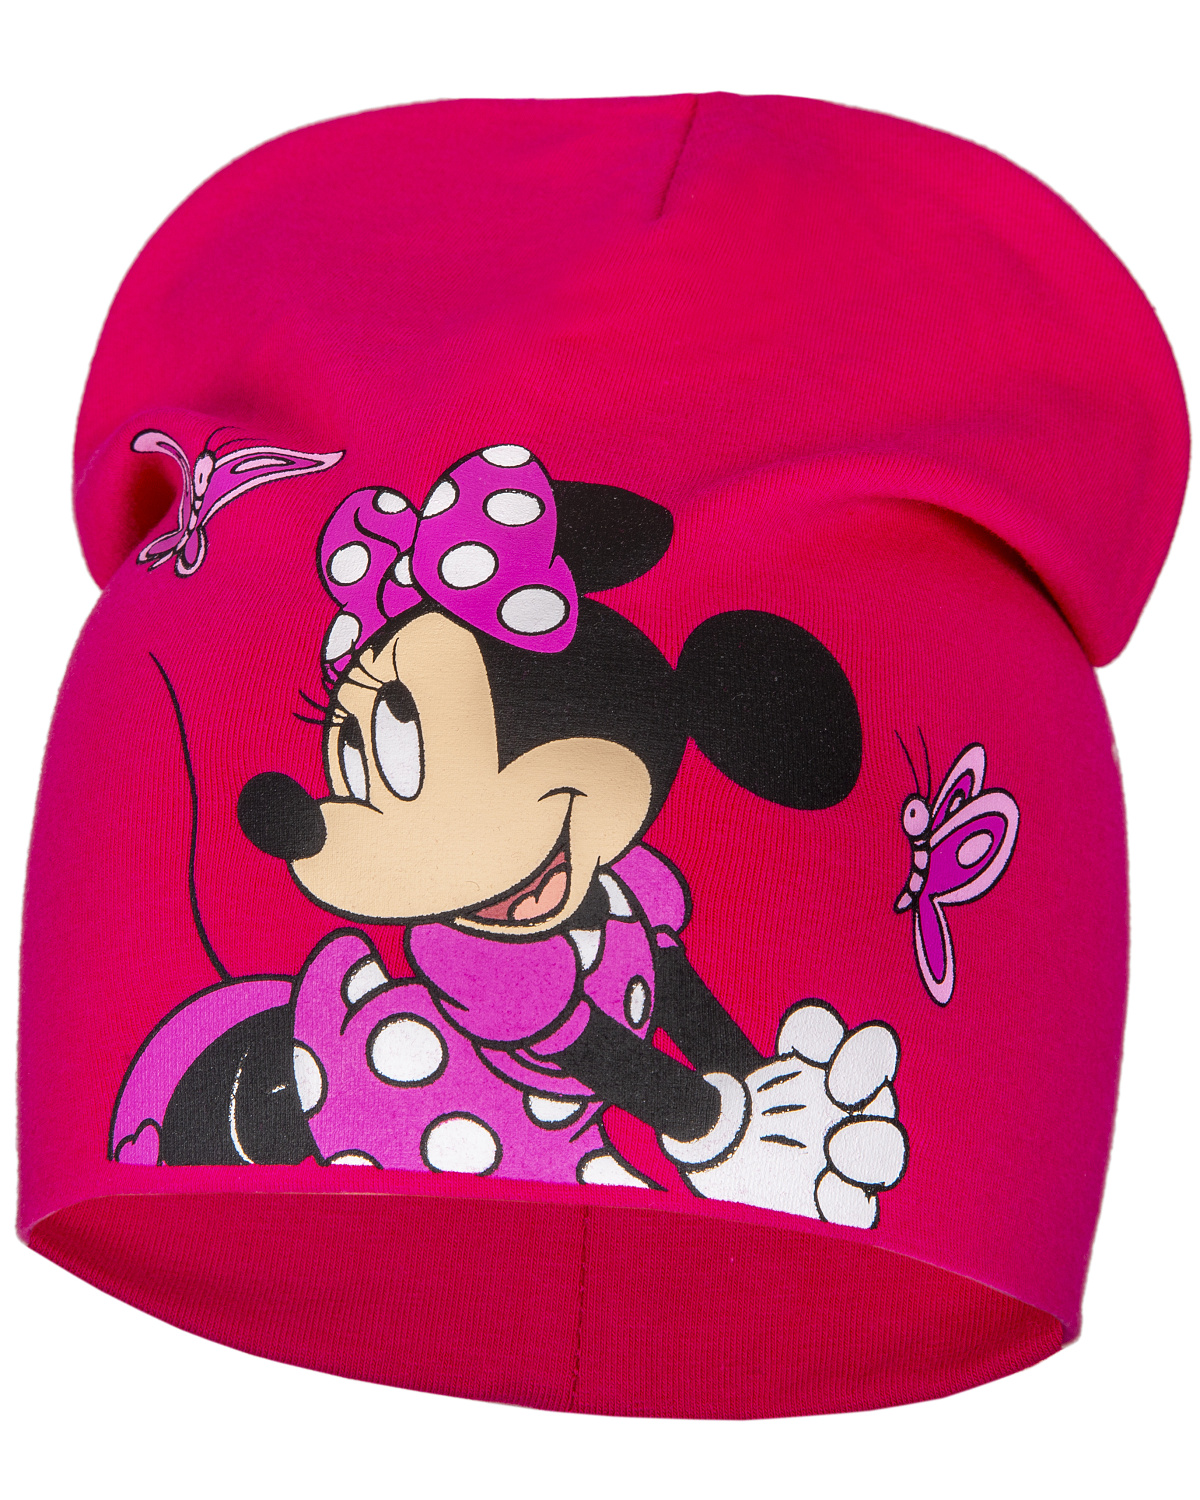 Levně Minnie Mouse - licence Dívčí čepice - Minnie Mouse 23-1146, sytě růžová Barva: Růžová